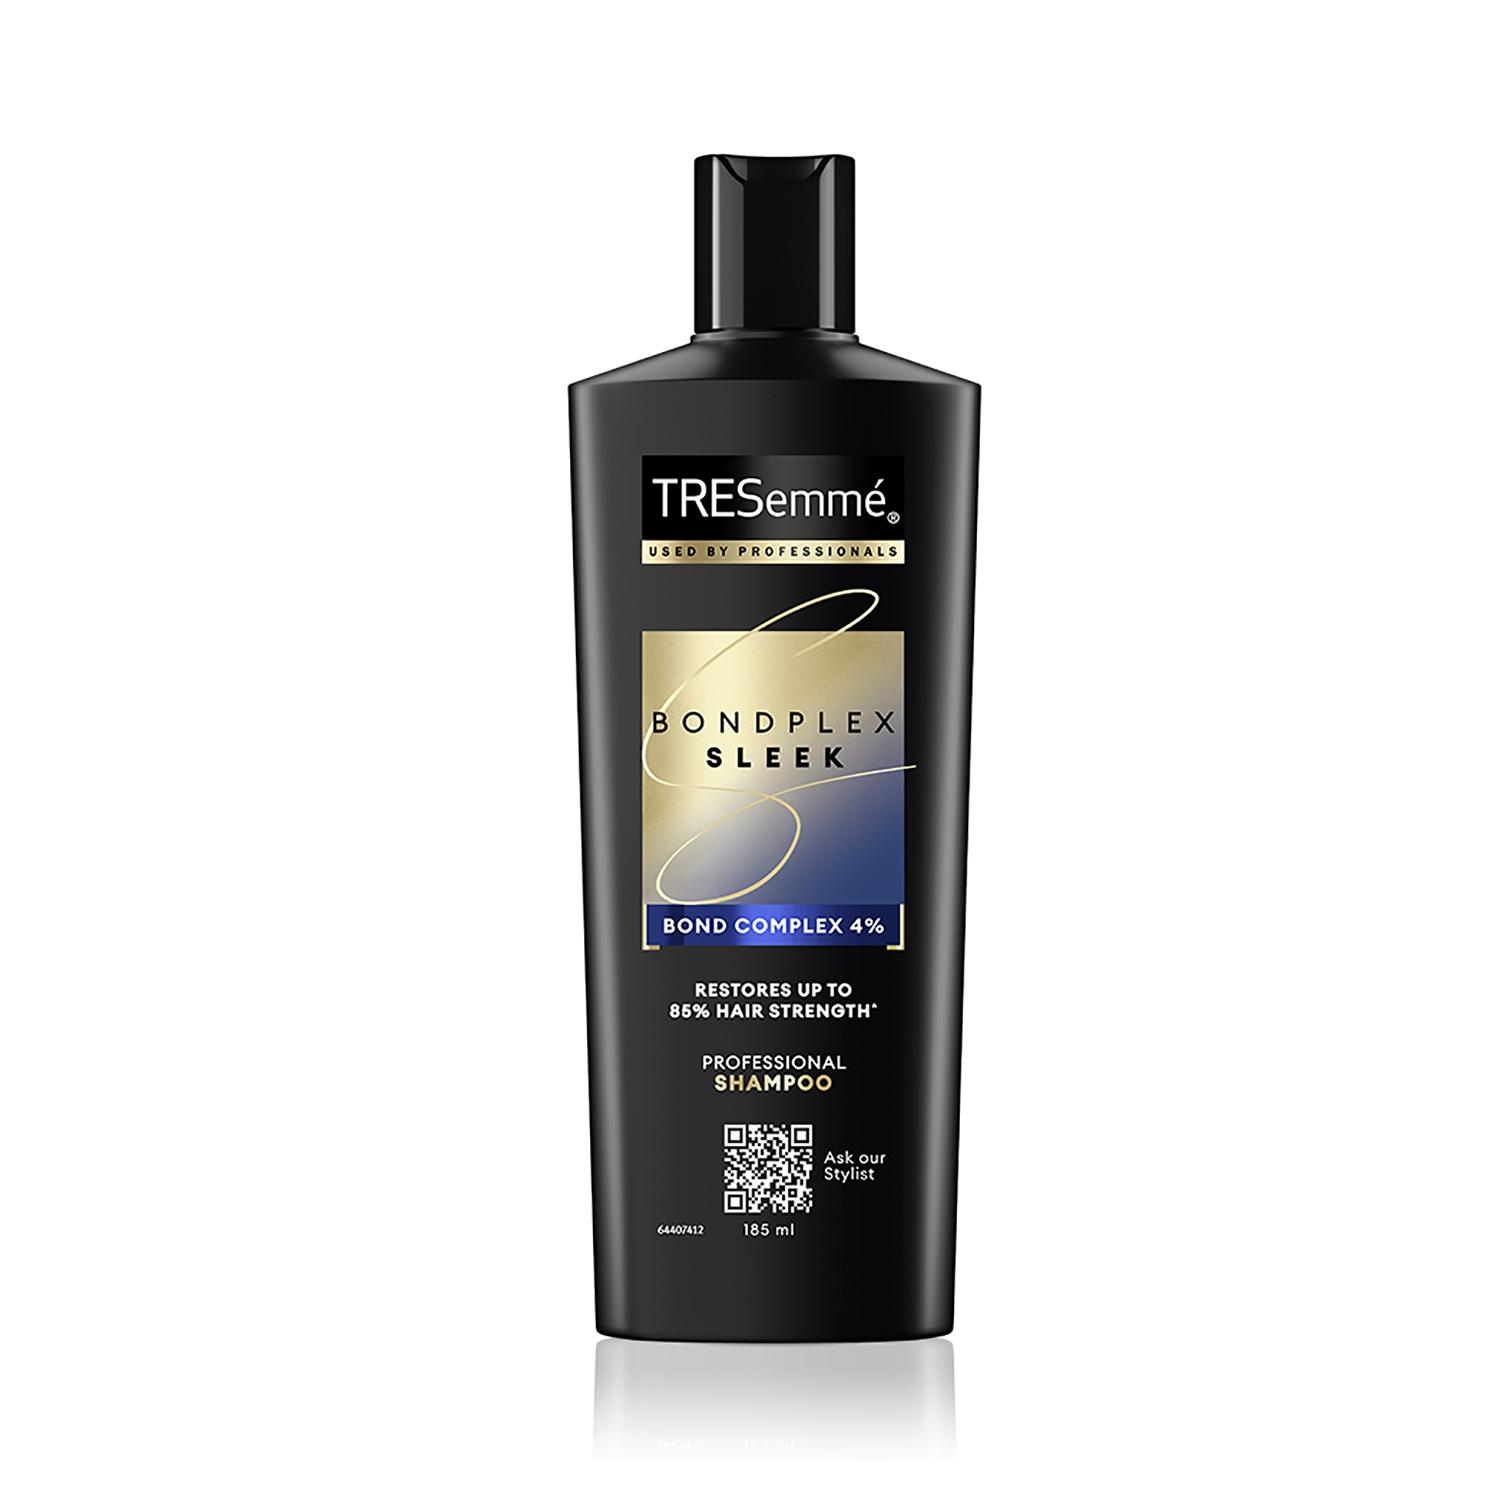 Tresemme | TRESemme Bondplex Sleek Shampoo (185 ml)